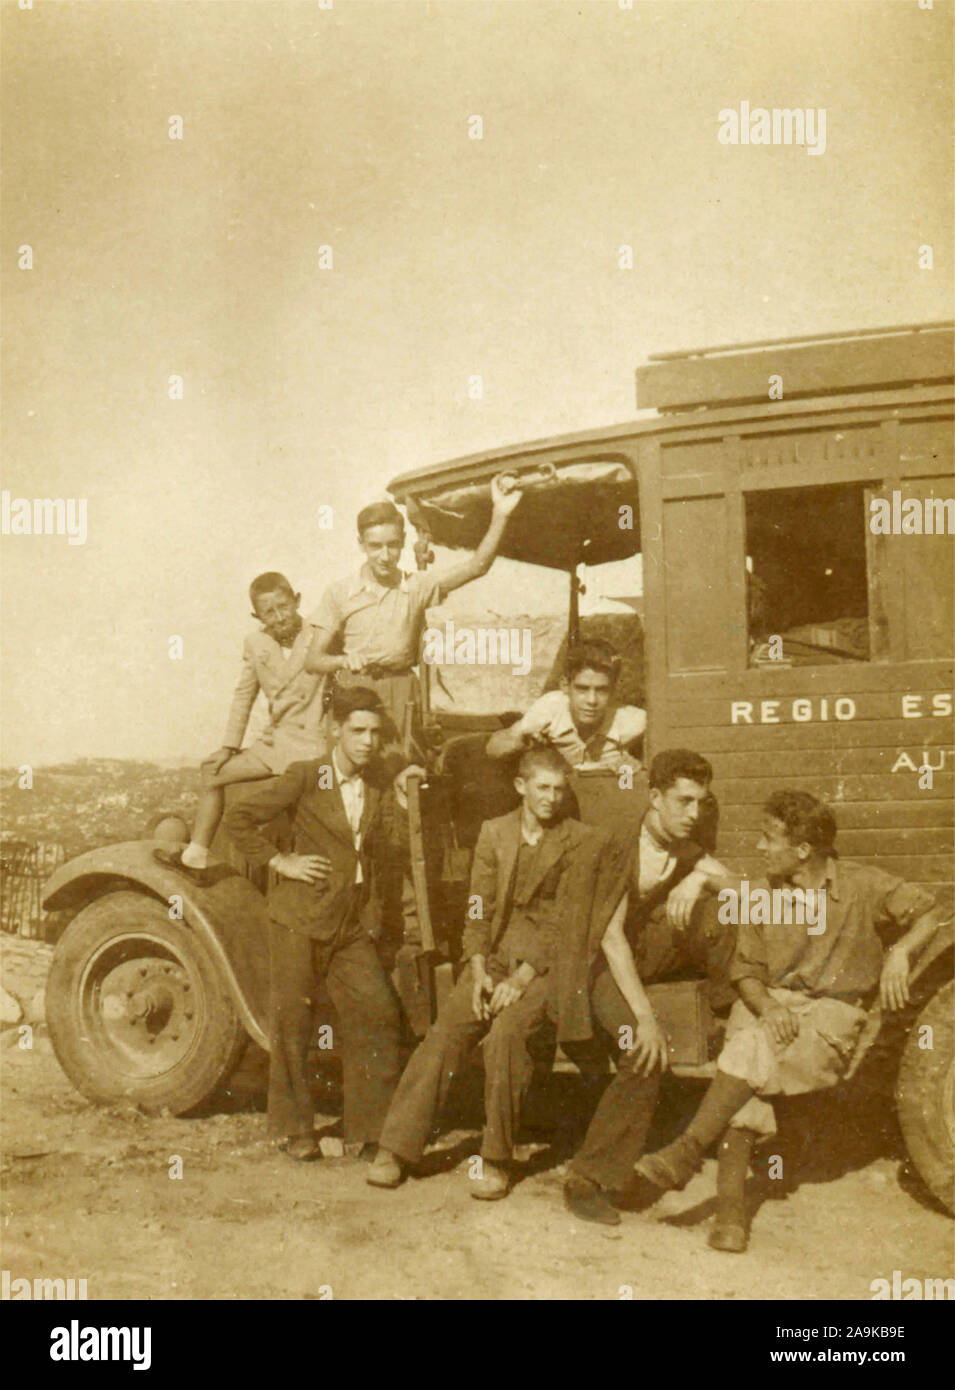 Grupo de hombres con el camión del ejército, Italia Foto de stock